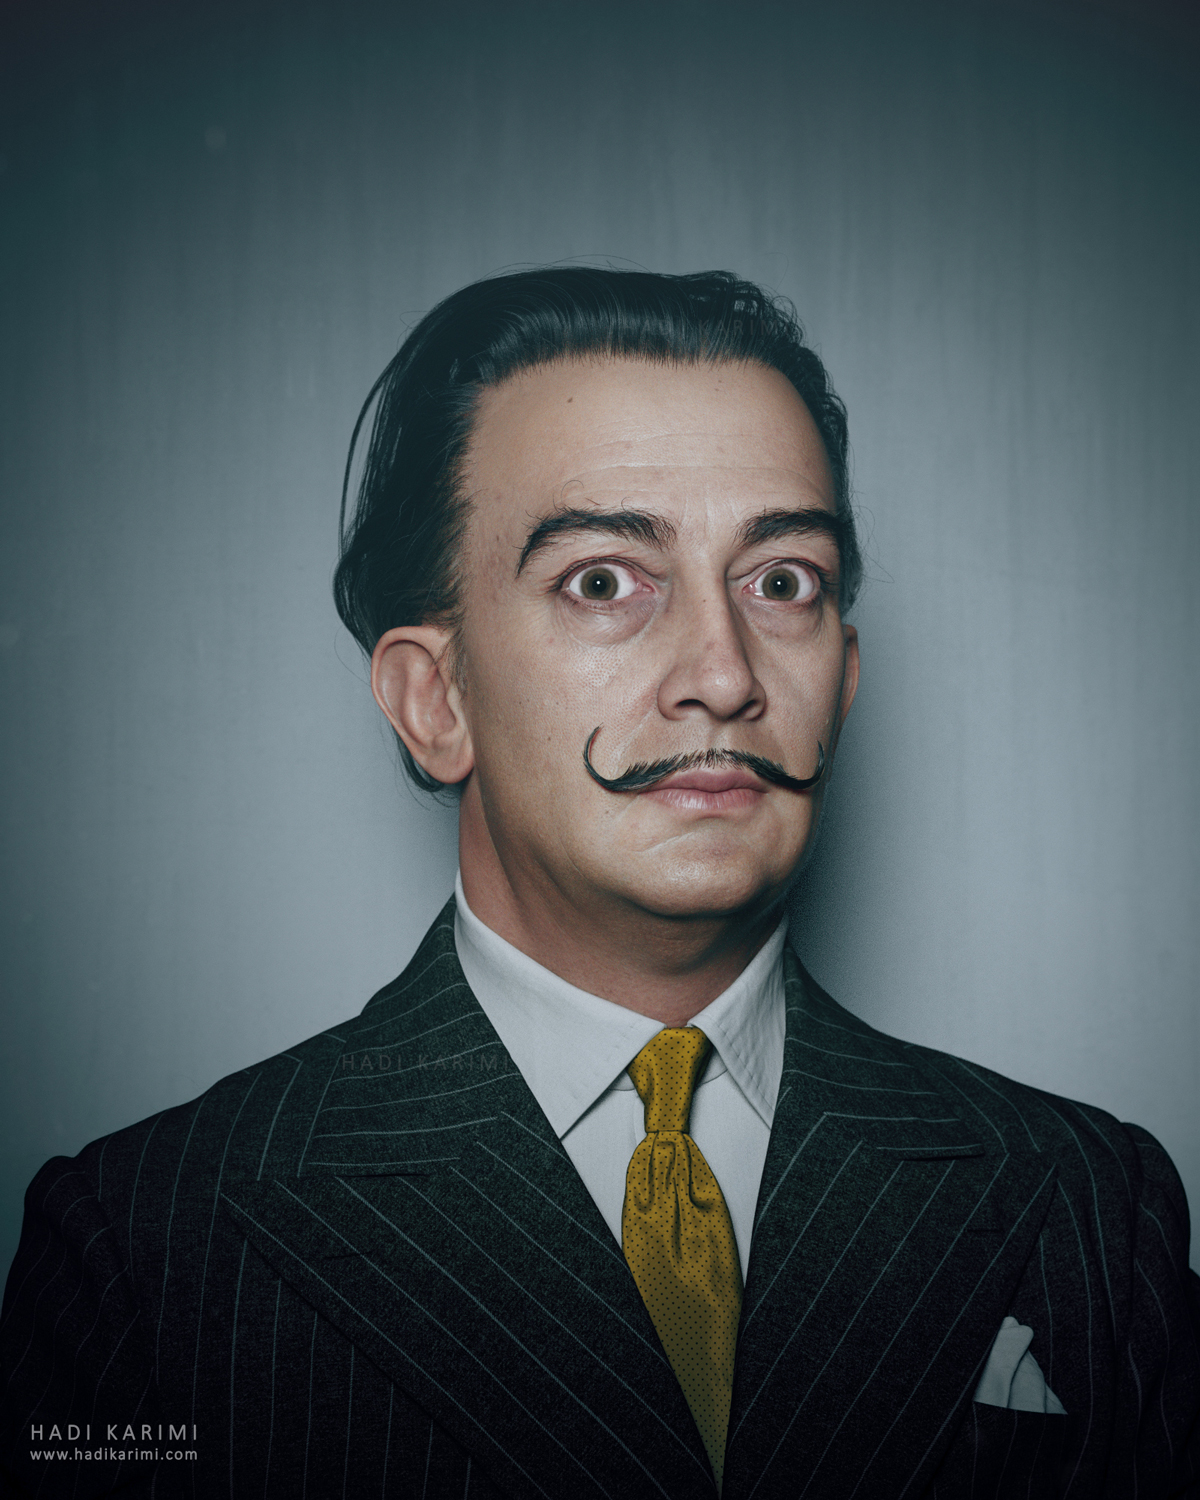 Salvador Dalí - Hadi Karimi